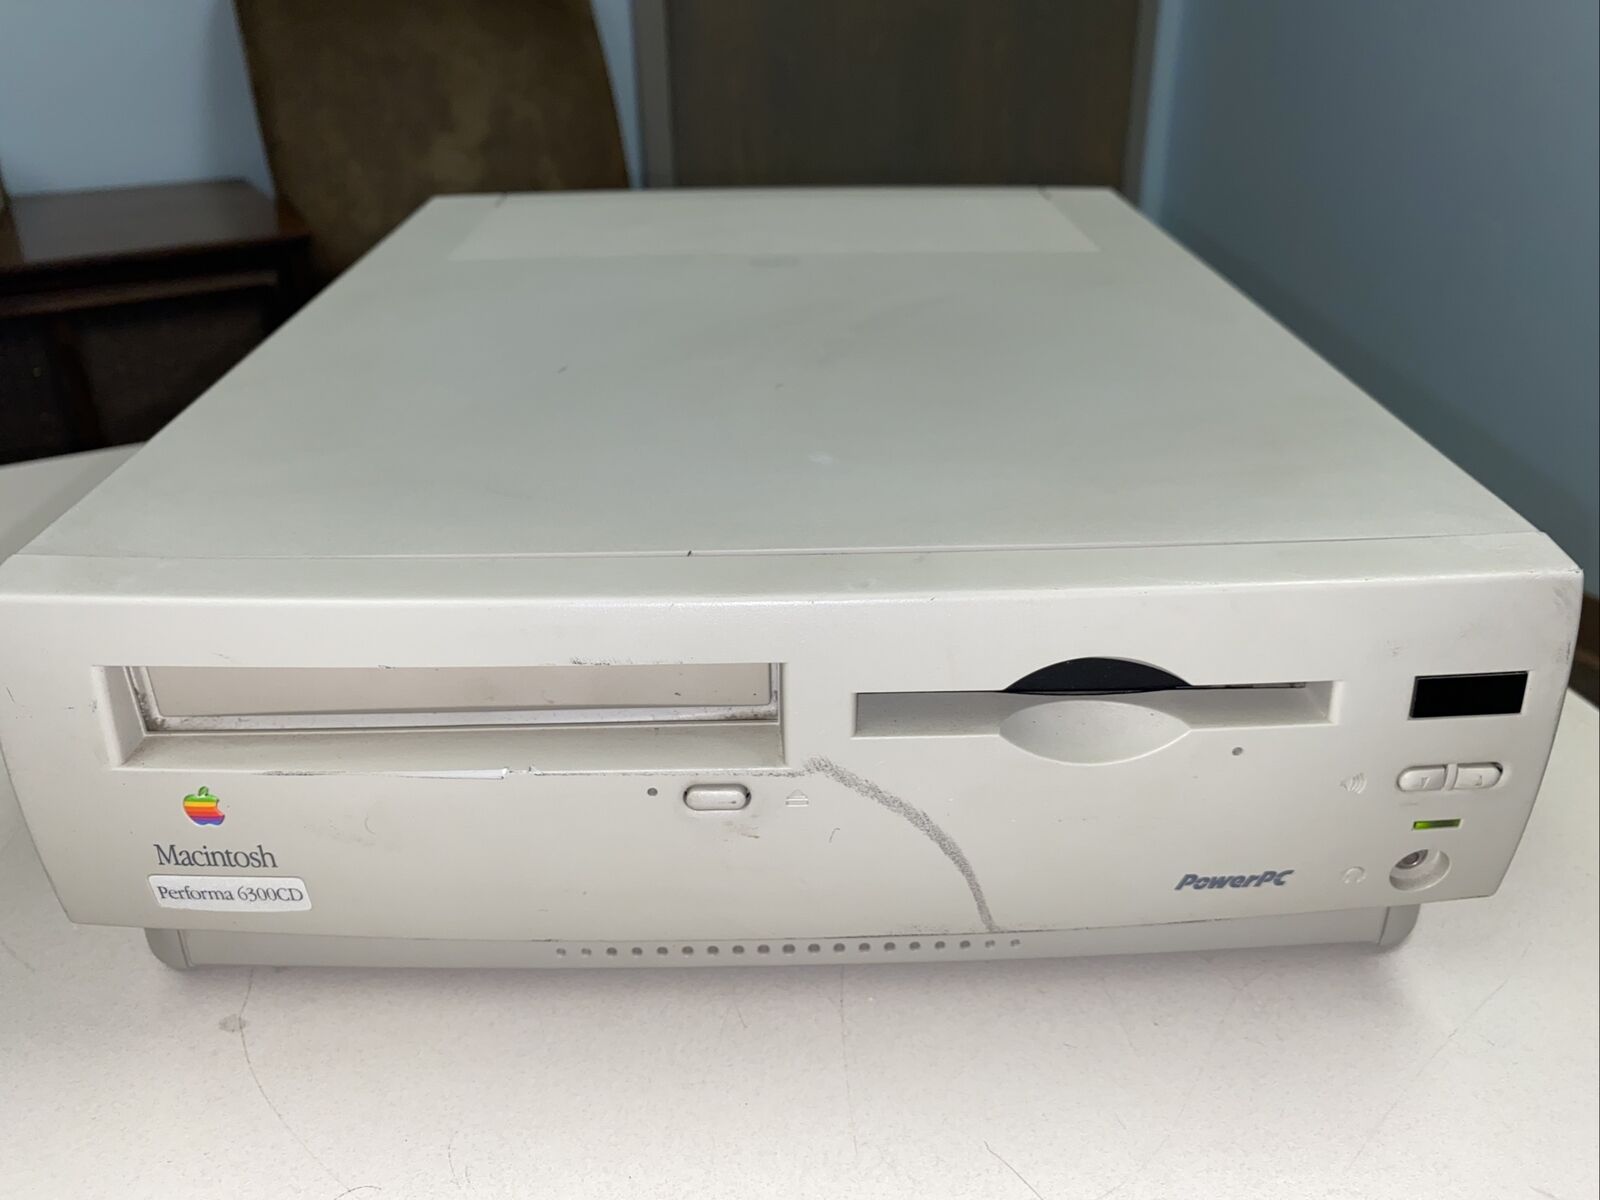 Vintage Apple Macintosh Performa 6300CD Model M3076 (Parts) See Description